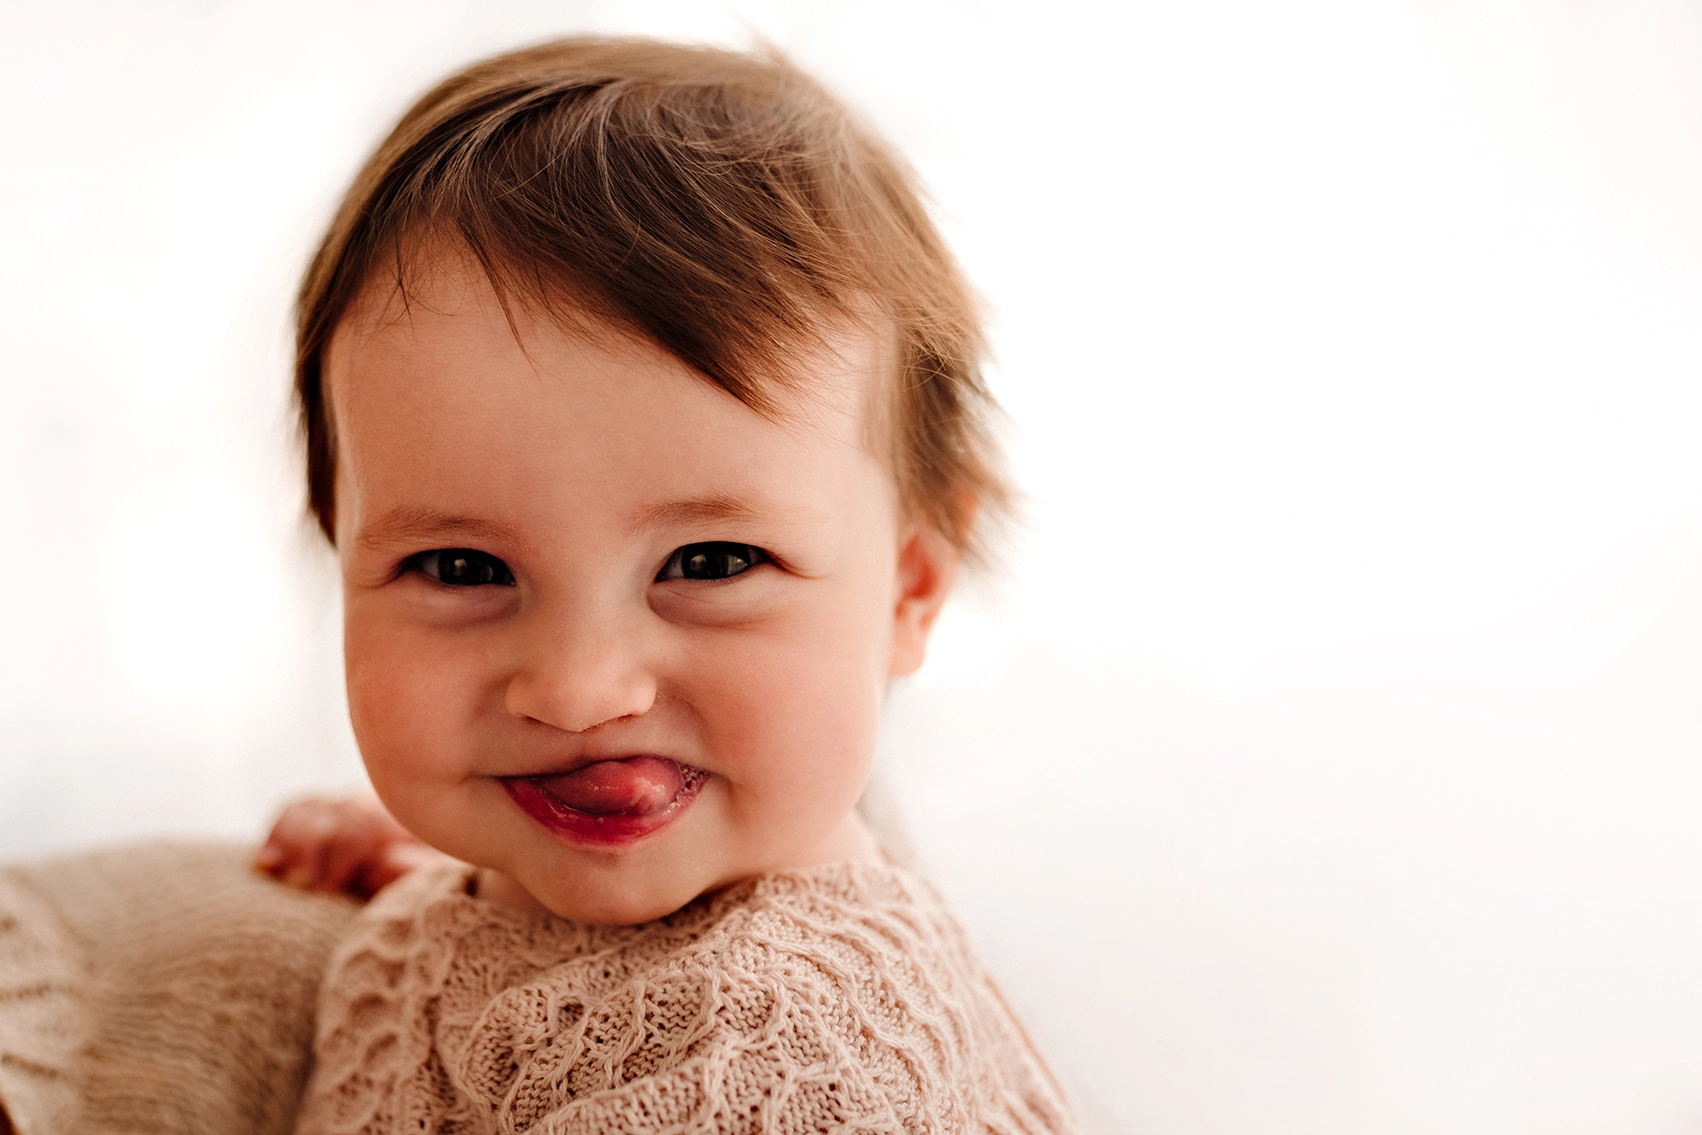 Foto ritrattistica a colori di una bambina che fa la linguaccia. Fotografia ritratto a colori di una bambina che fa la linguaccia Trieste